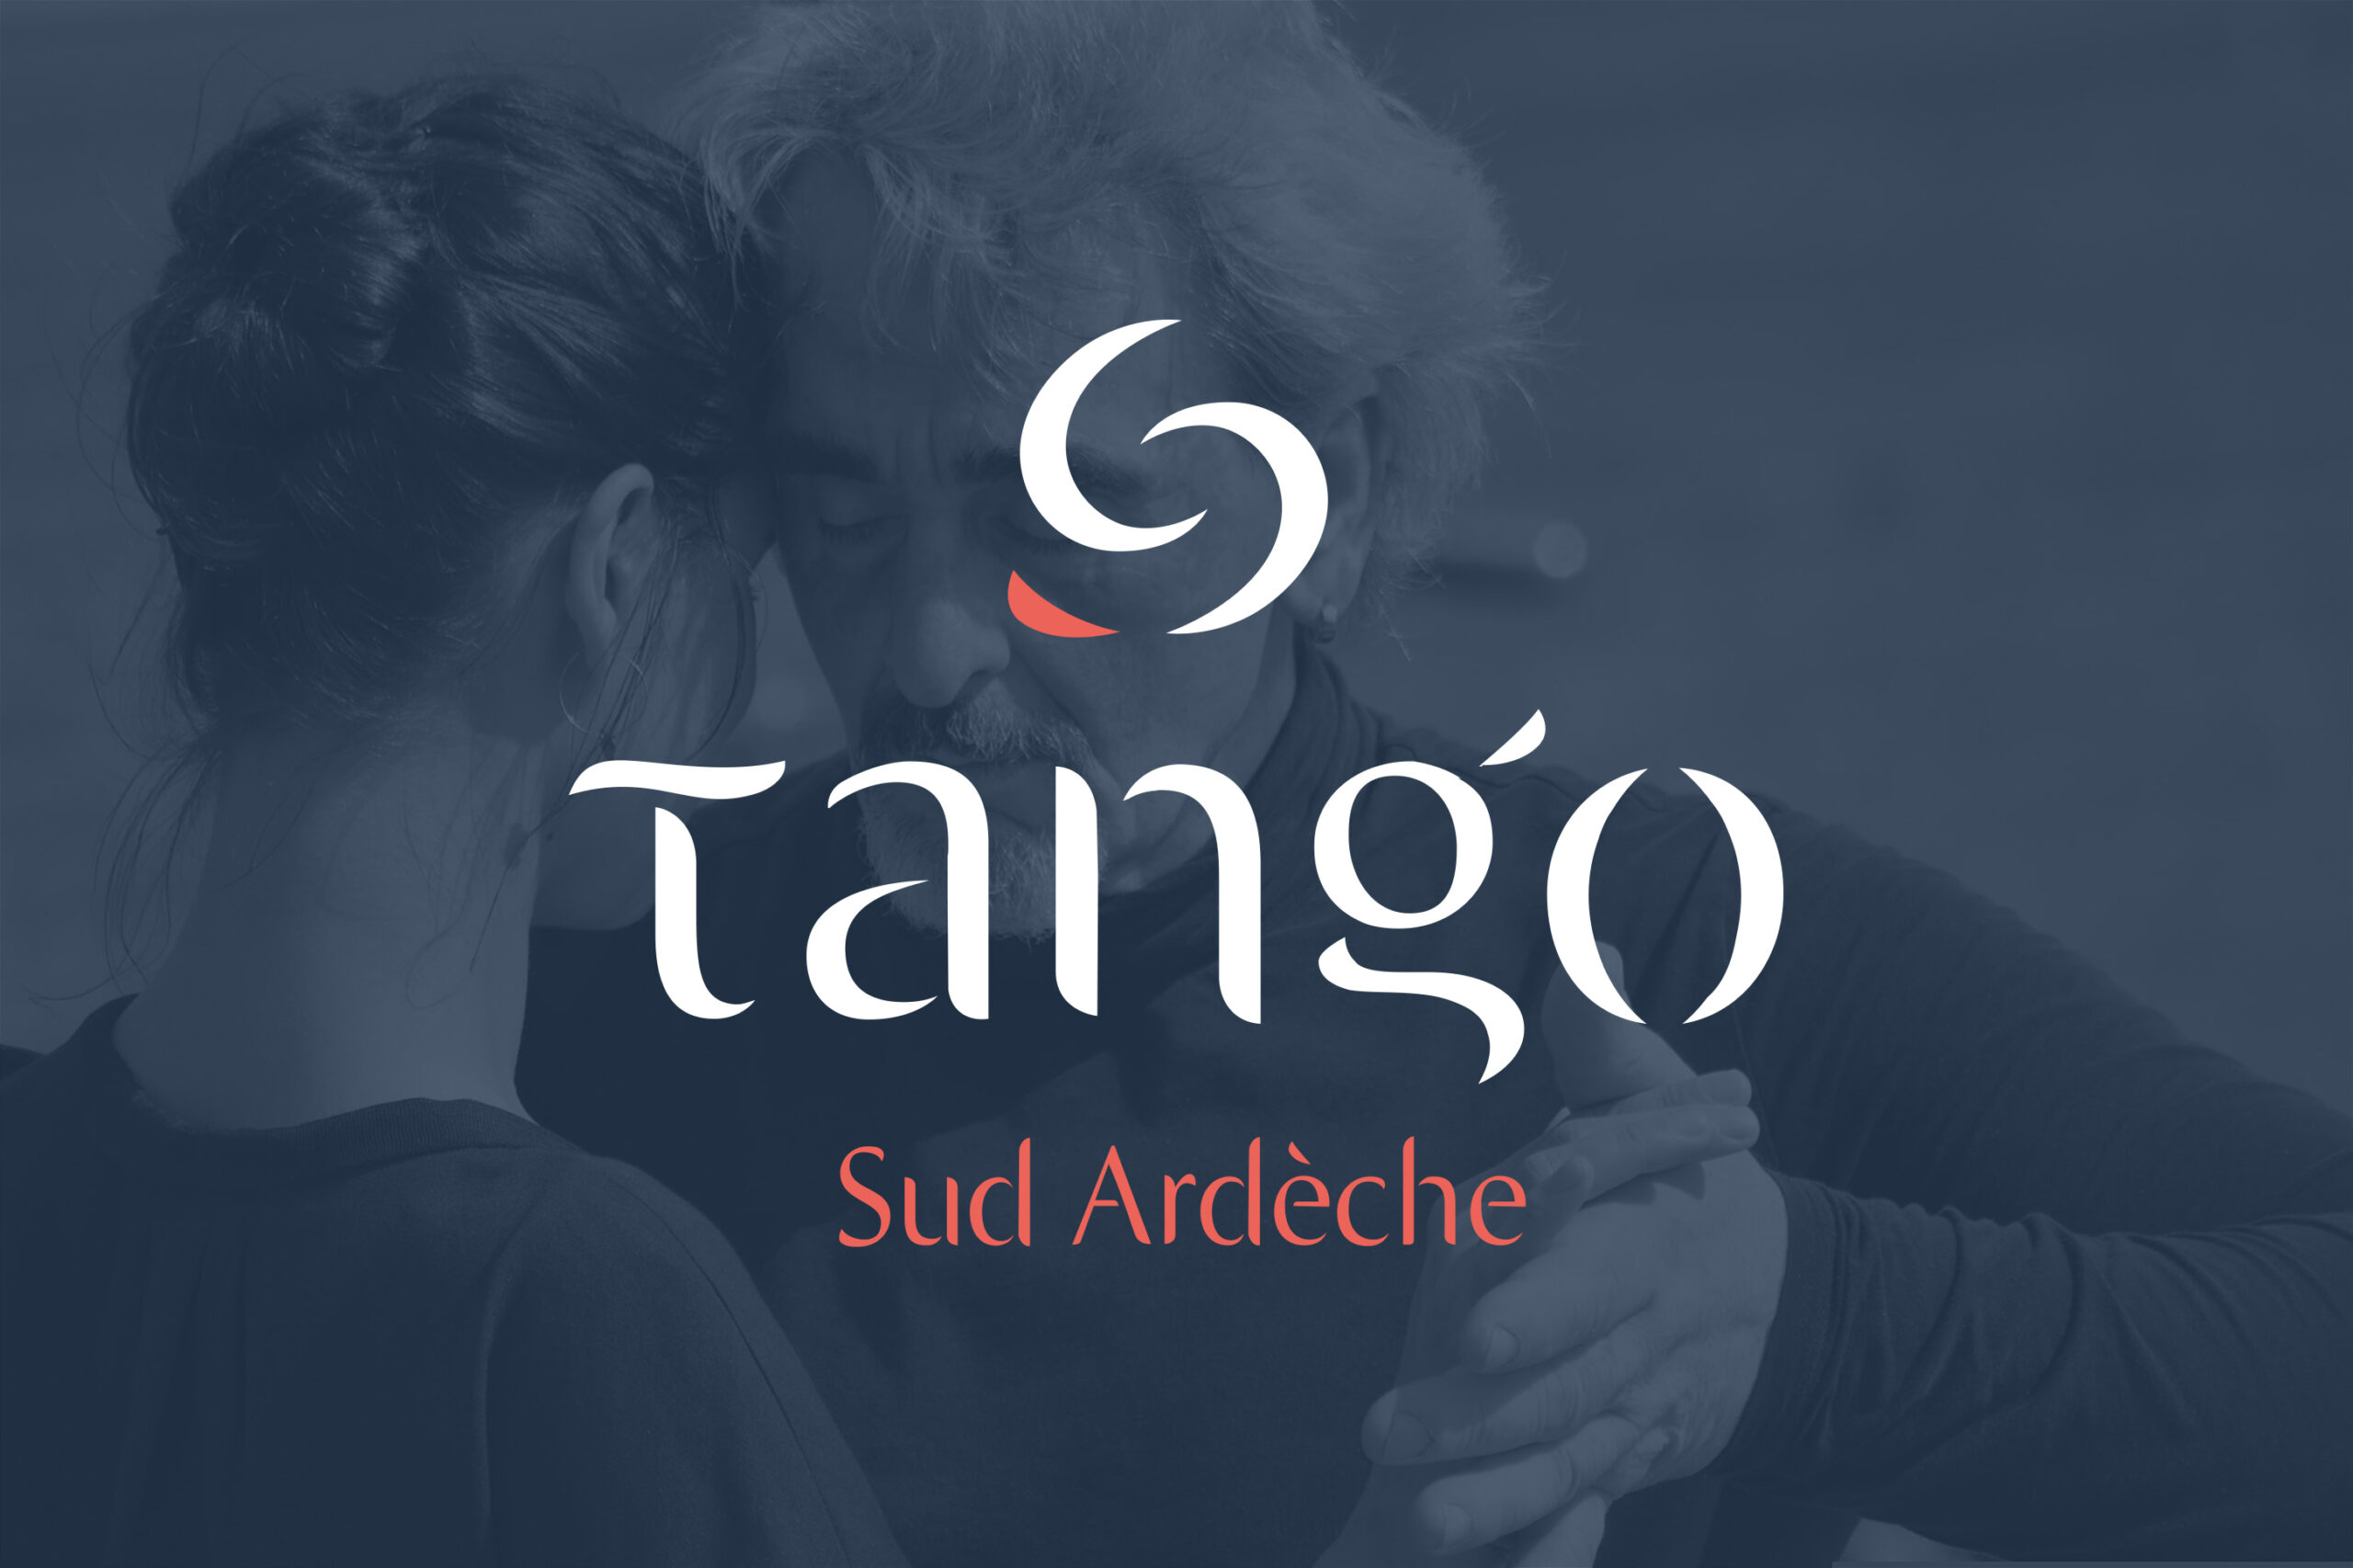 Identité visuelle créée par Flodesign pour Tango Sud Ardèche